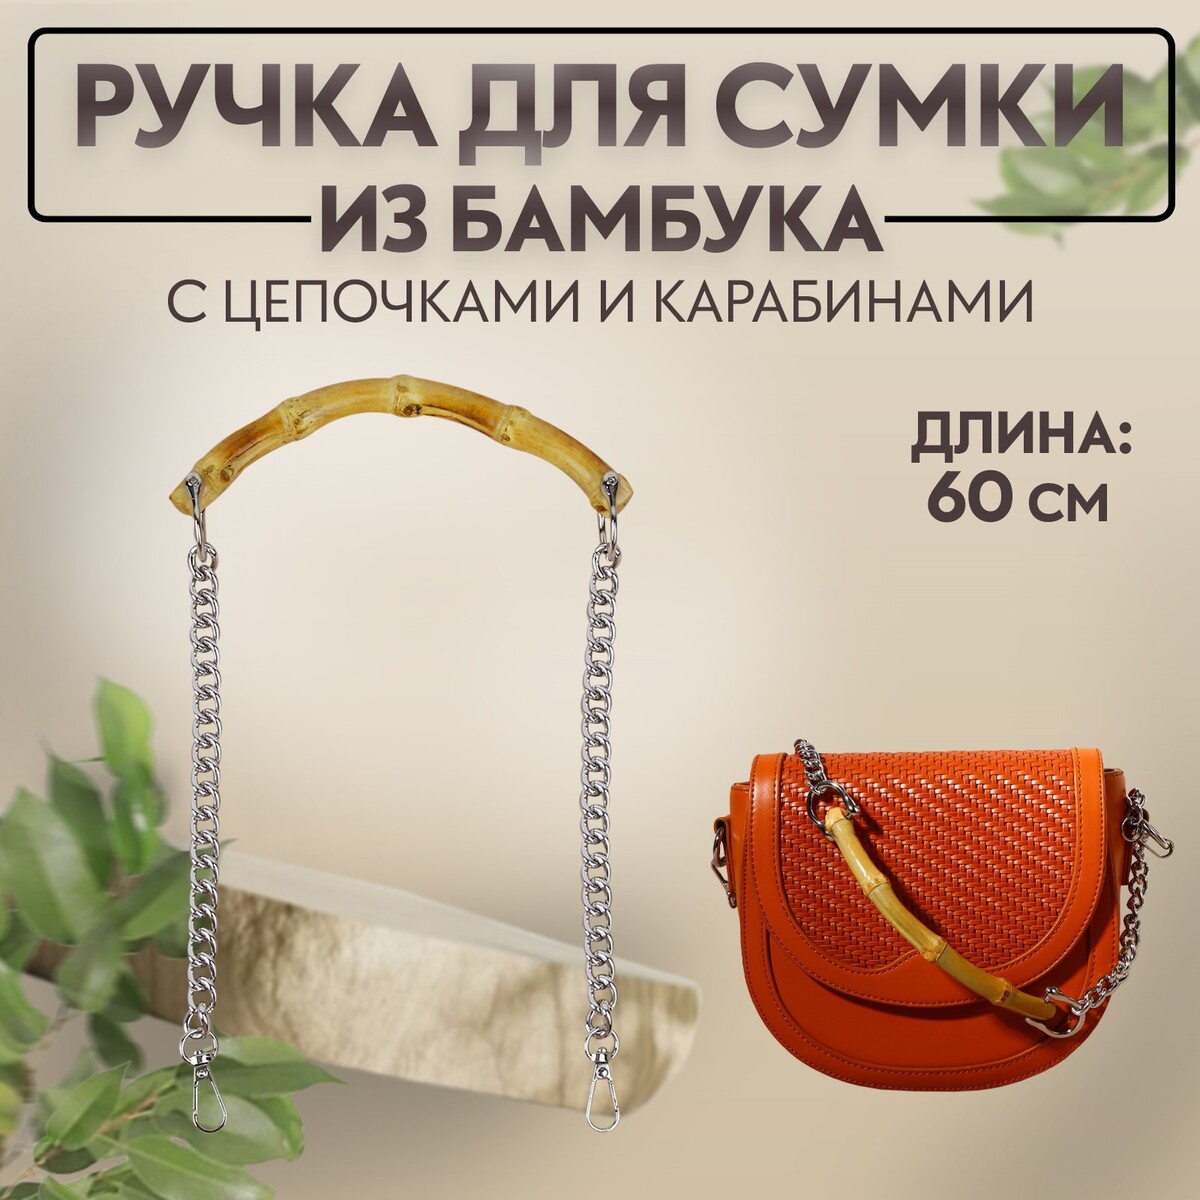 Ручка для сумки, бамбук, с цепочками и карабинами, 60 см, цвет серебряный ручка для сумки с карабинами 35 ± 1 см × 3 5 см серебряный